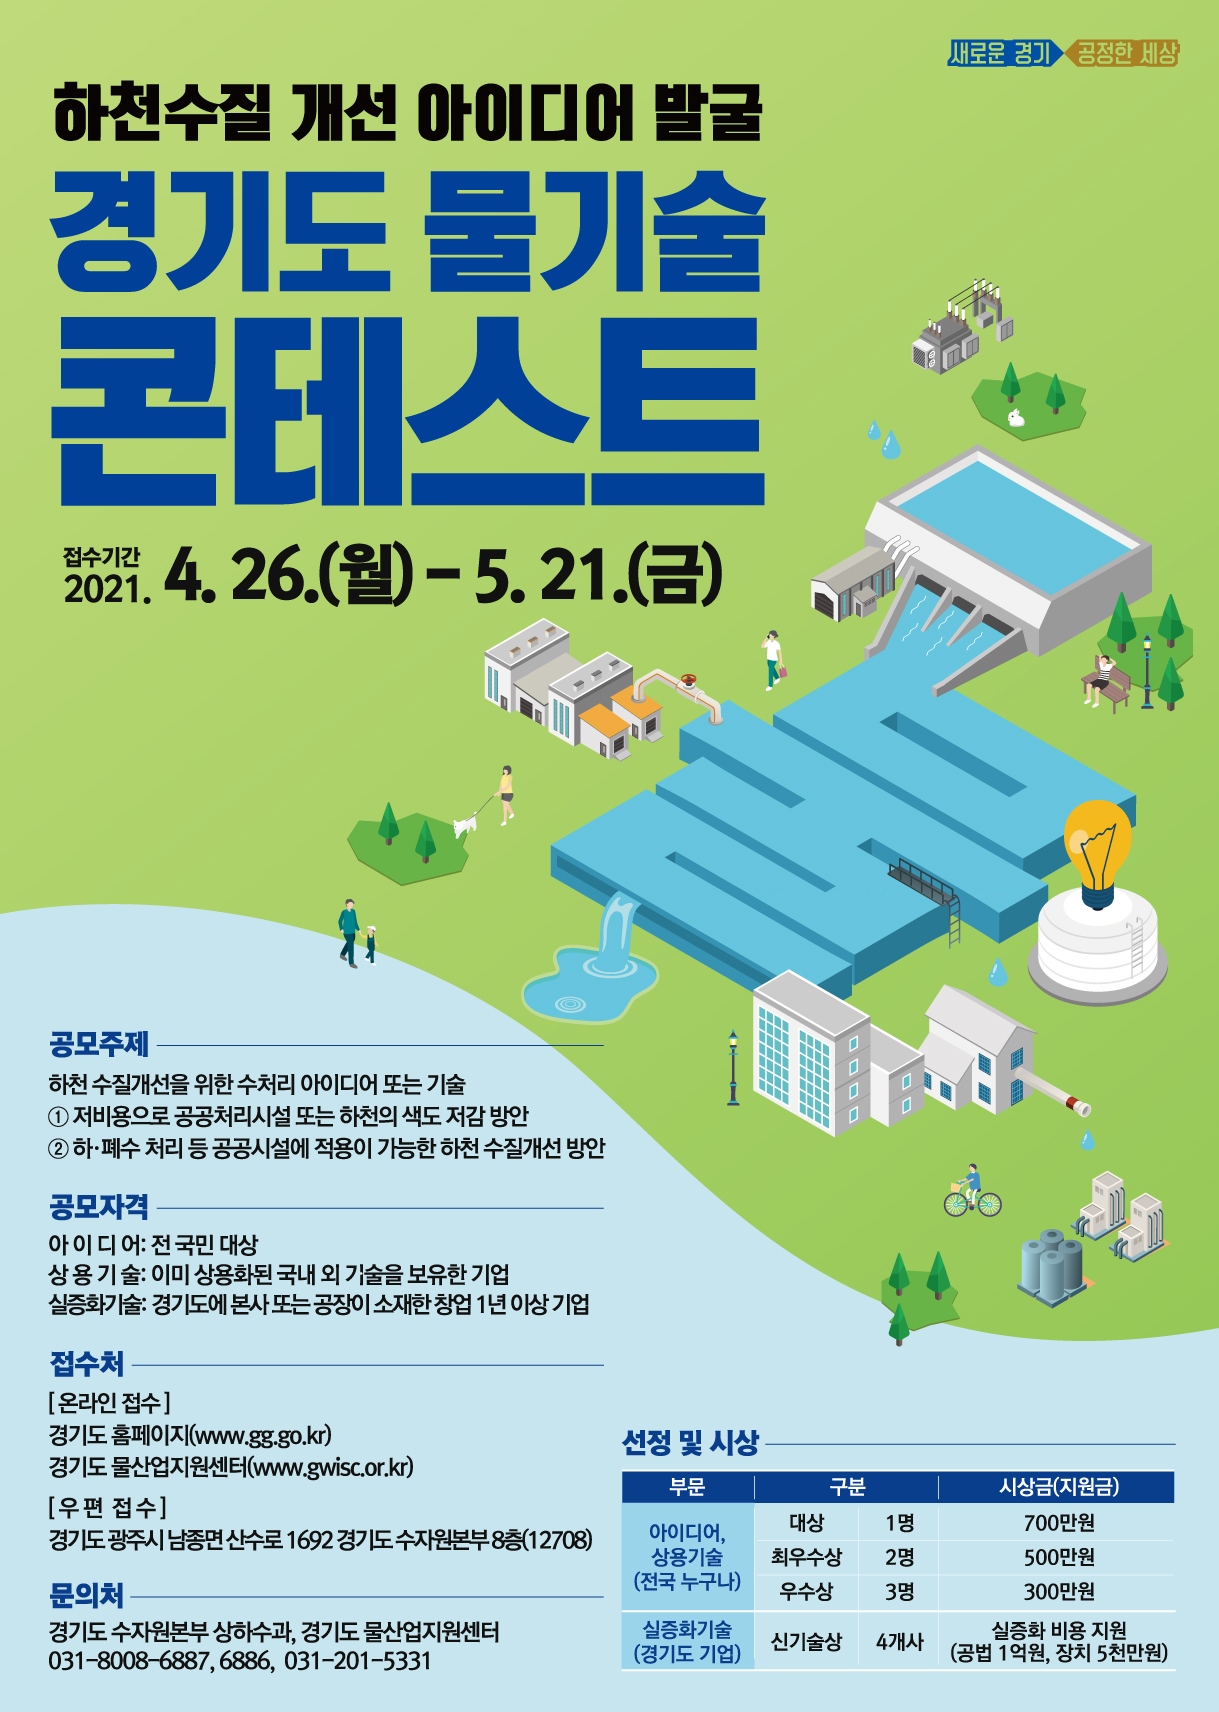 도, 하천수질 개선을 위한 ‘물기술 콘테스트’ 개최. 참여자 모집